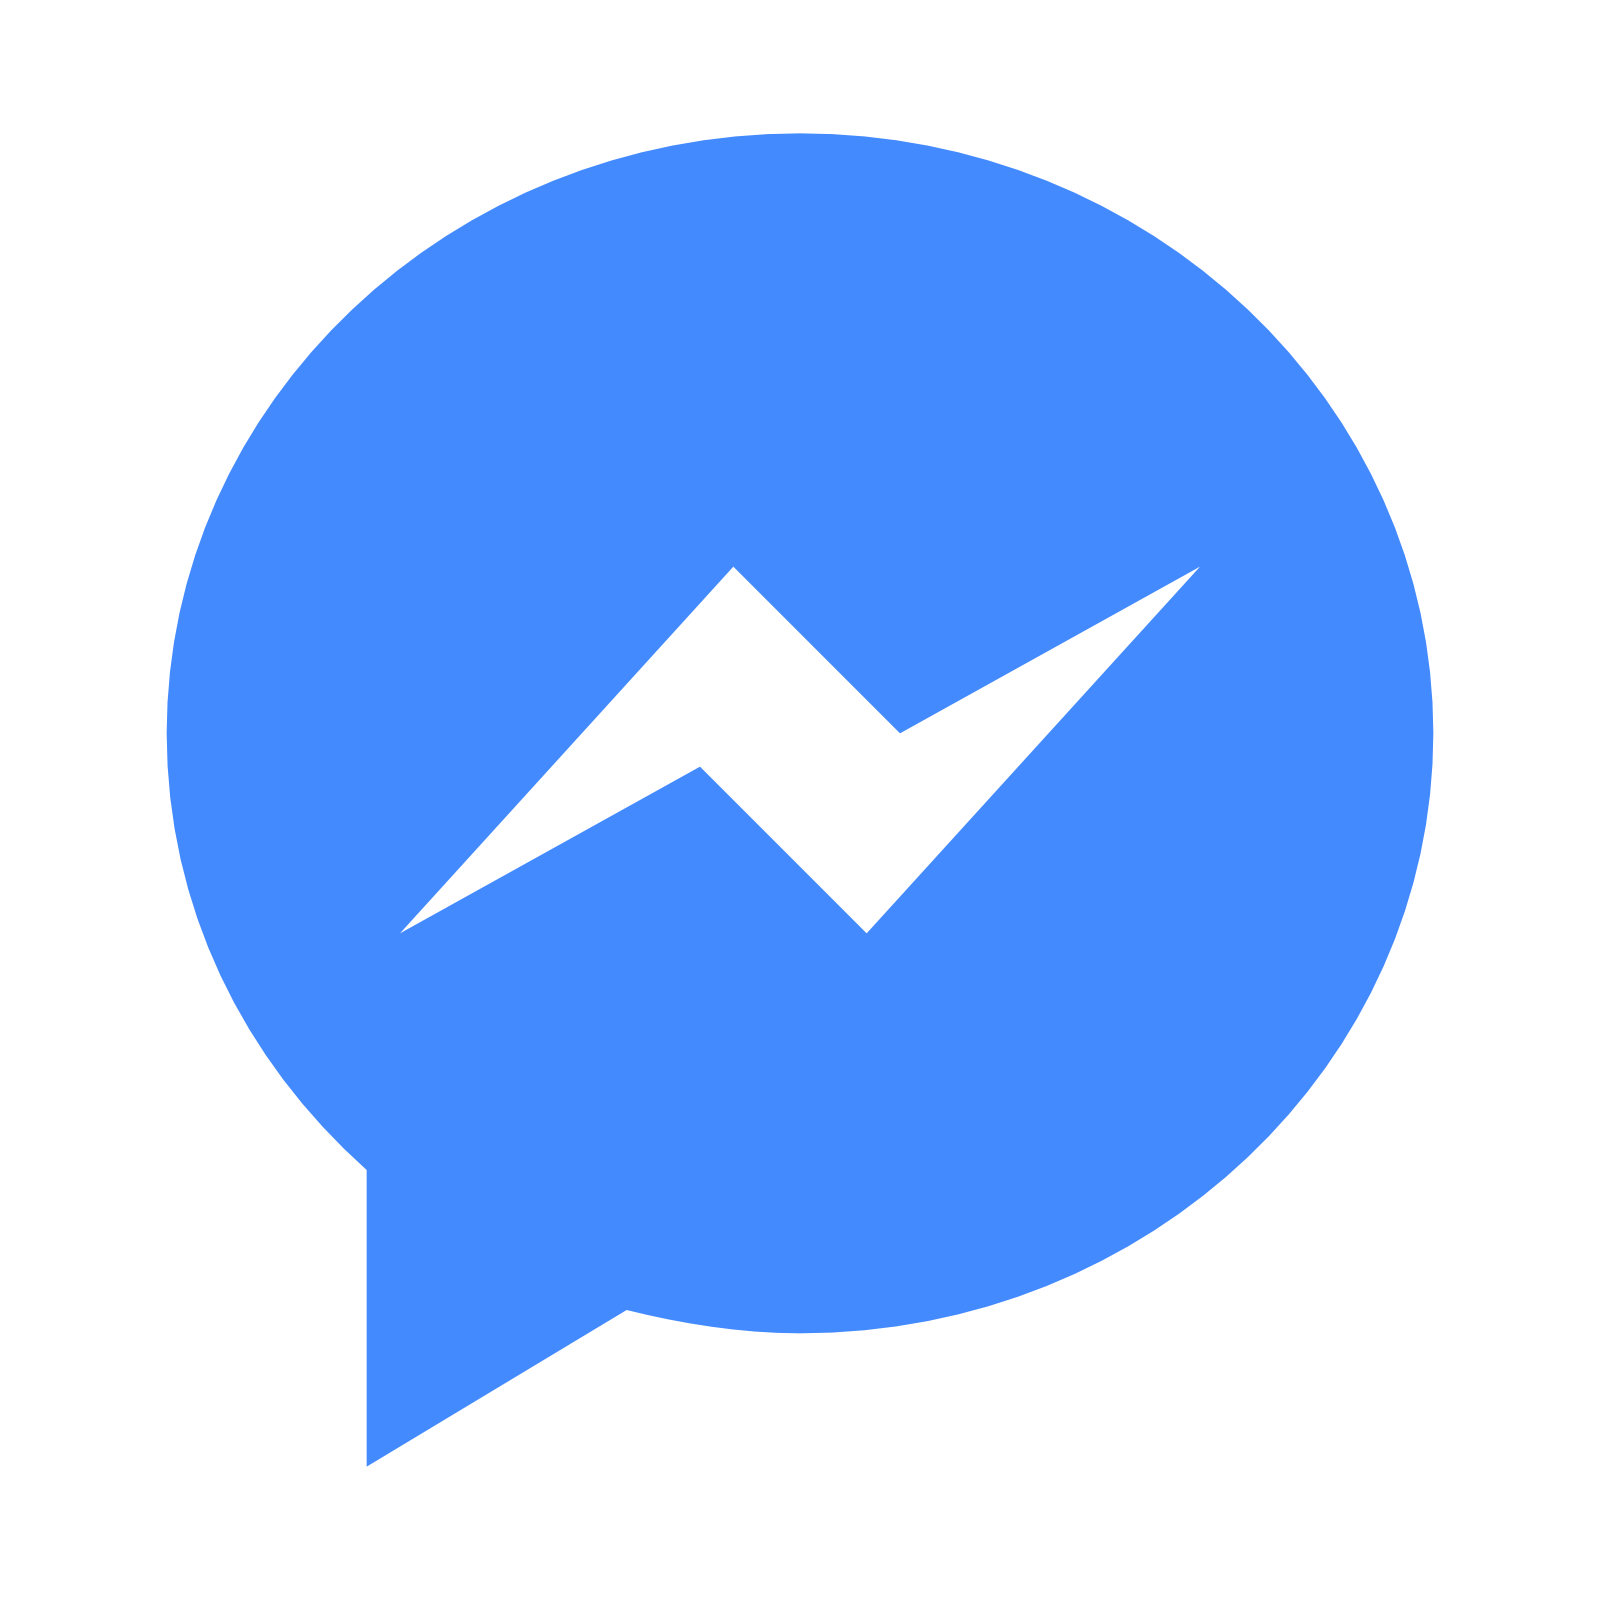 Messenger pozwoli przez 10 minut skutecznie skasować wysłaną wiadomość